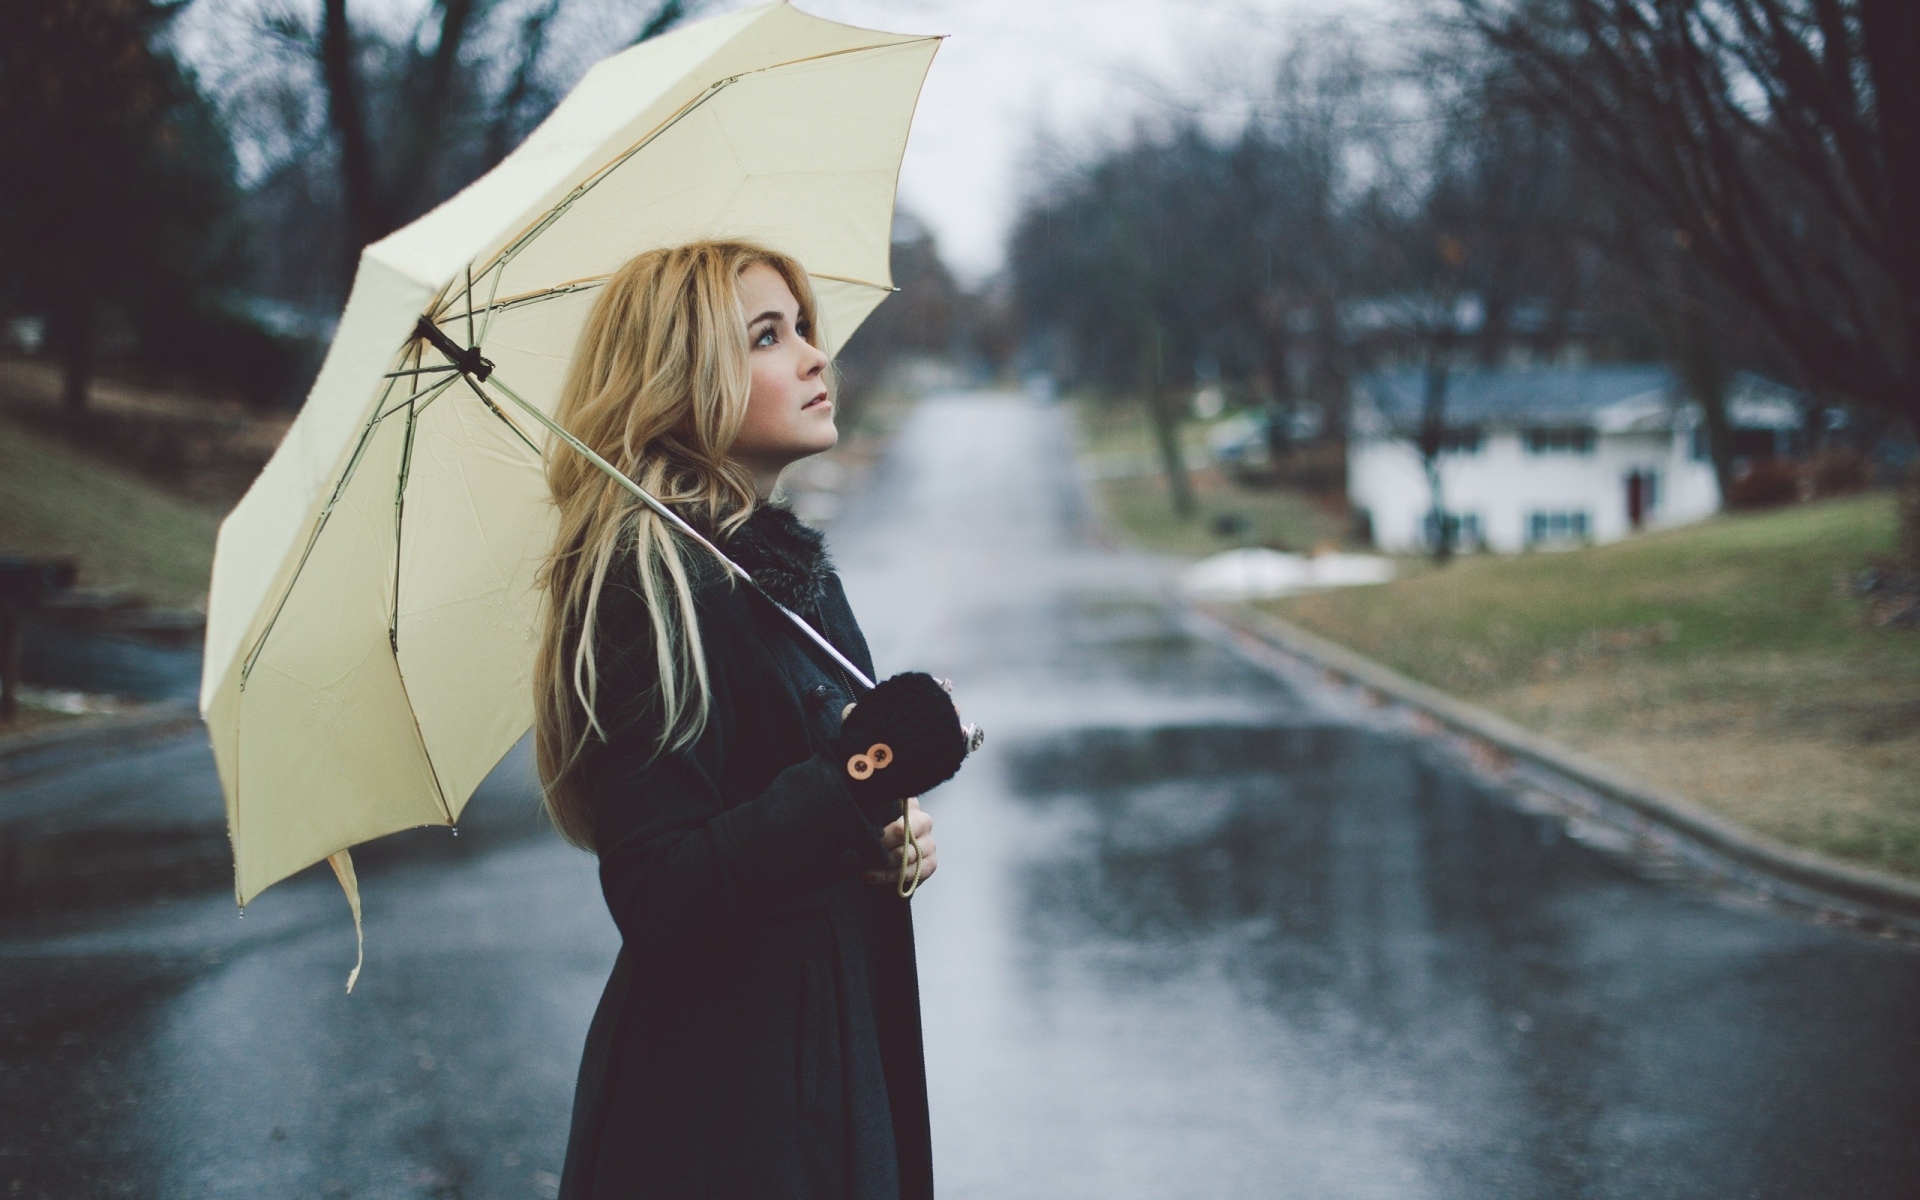 Картинки Девушка, блондинка, зонтик, улица, дождь, плащ, настроение фото и обои на рабочий стол